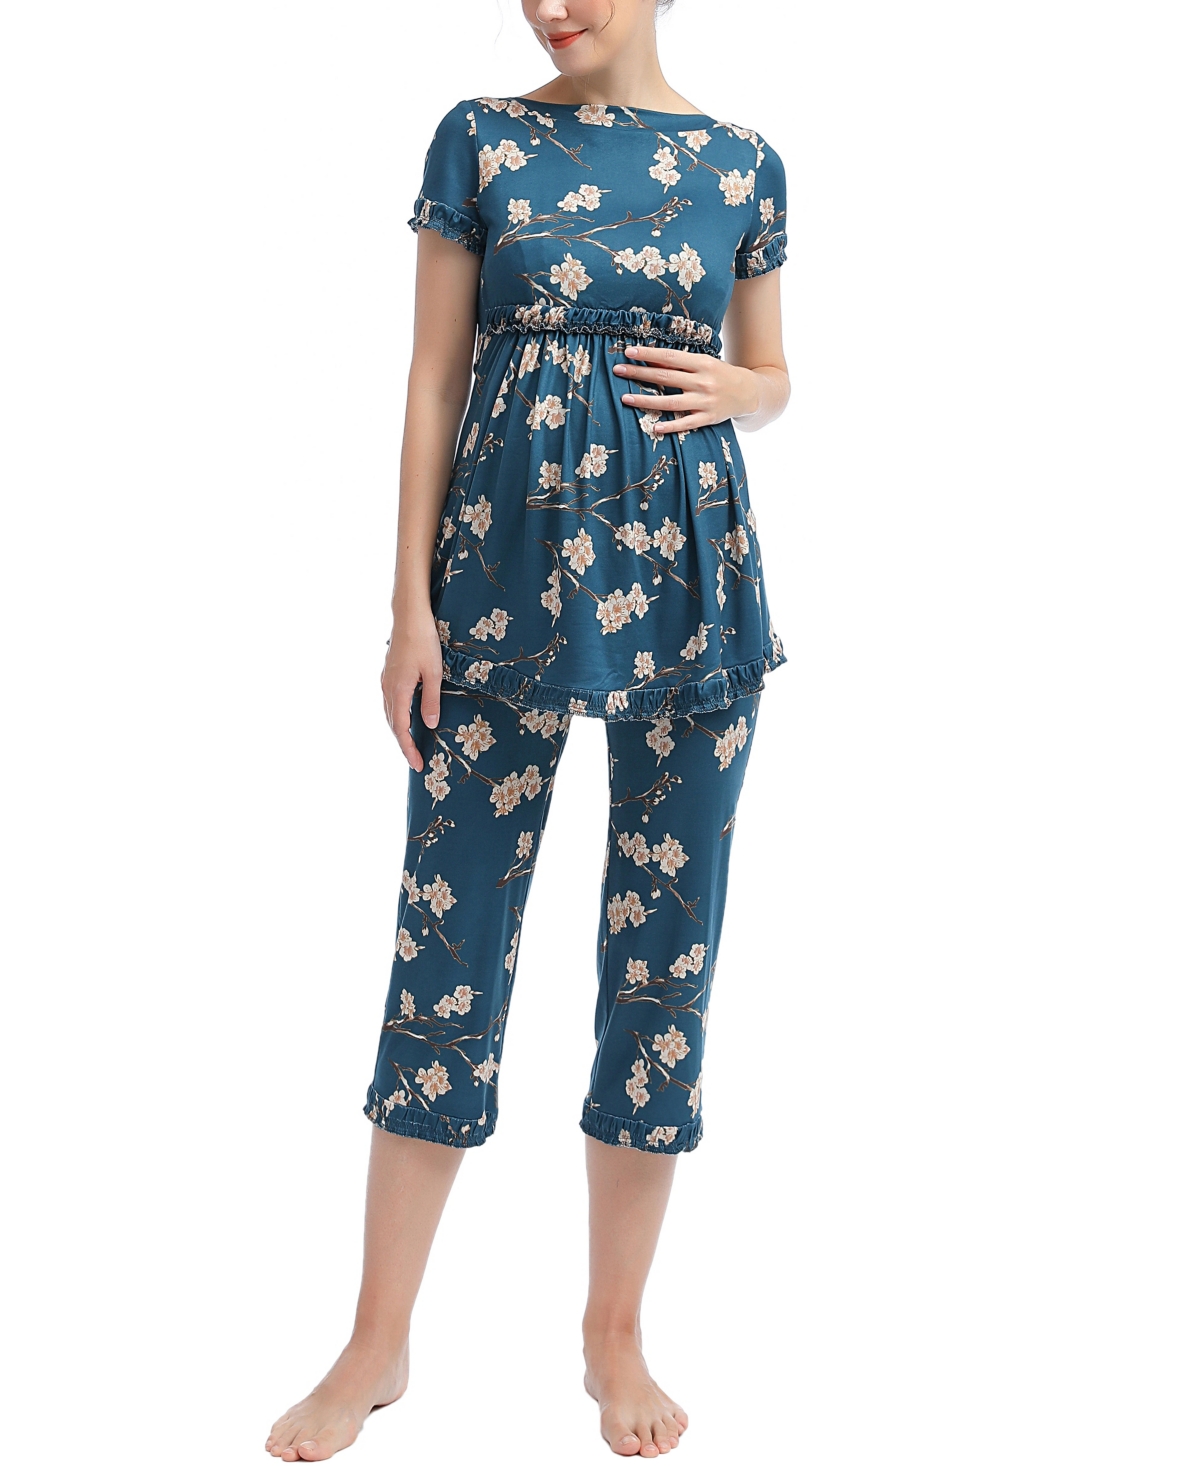 kimi + kai Zadie Maternity Nursing 2-Piece Pajama Set - Navy